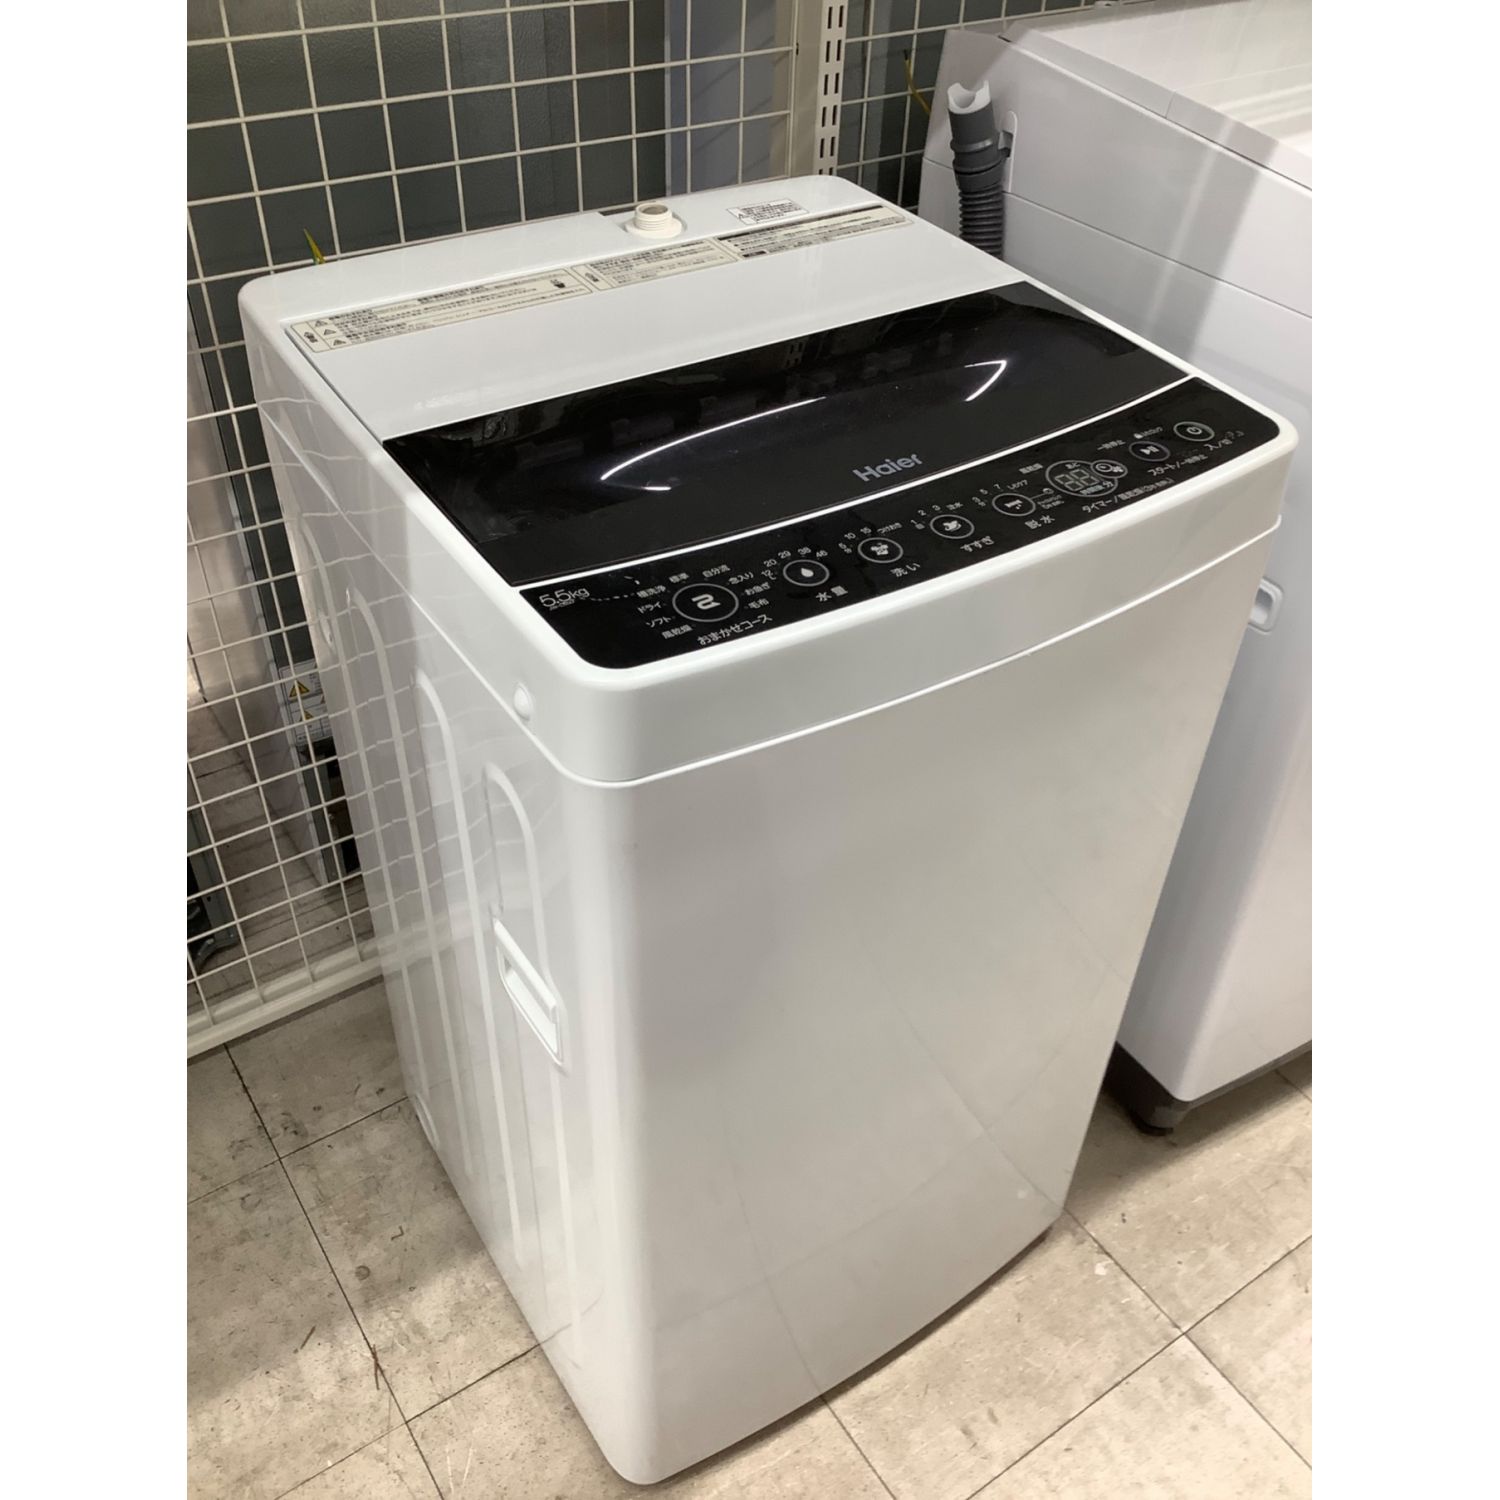 東区 和白 Haier5.0㎏洗濯機2018年製 JW- L55A 0528-1 - 生活家電